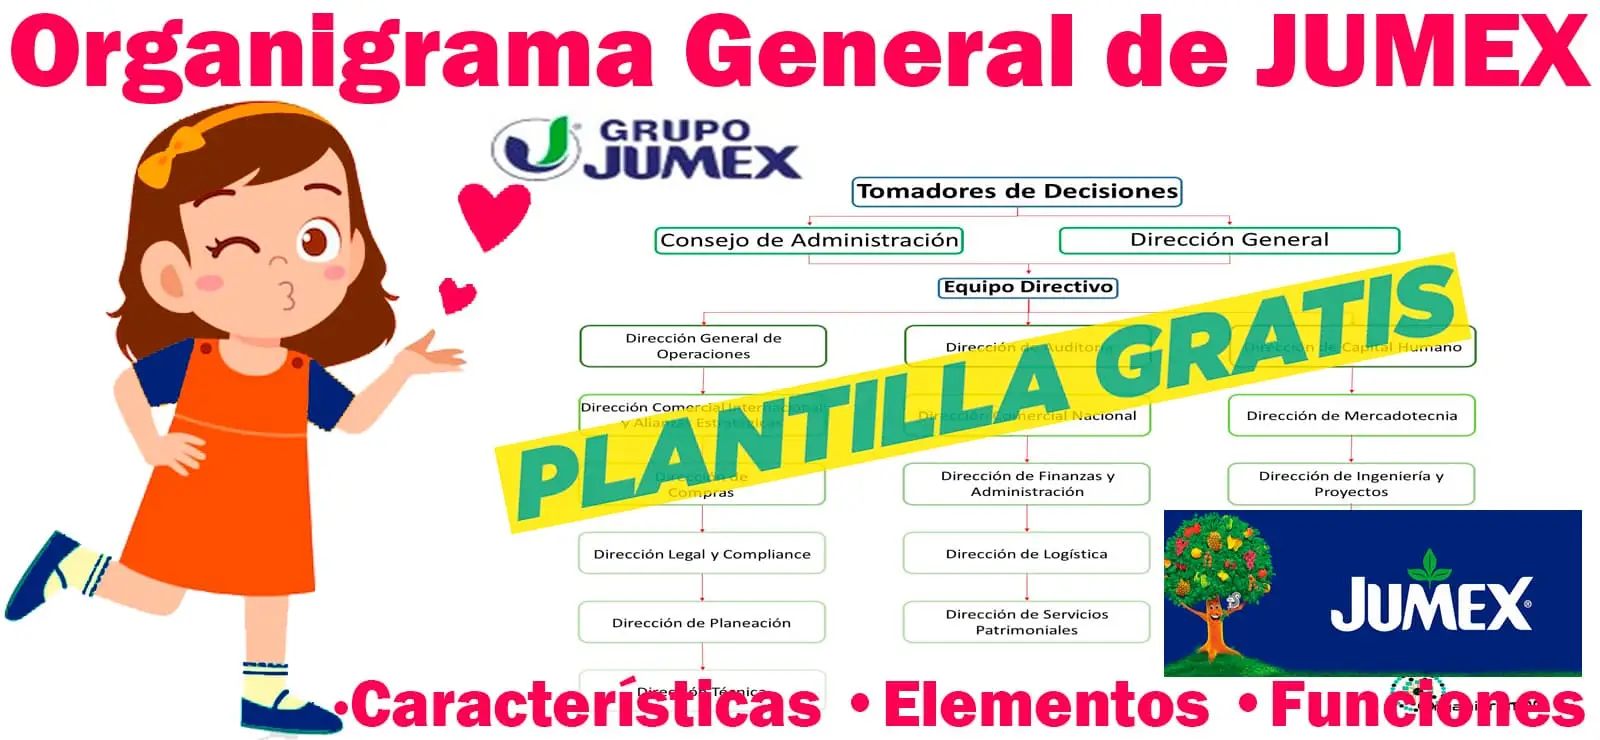 Organigrama General de Jumex: Coordinación Directiva - Características, Elementos y Funciones - Incluye Plantilla Gratis | Sitio Web Oficial organigramas.com.es